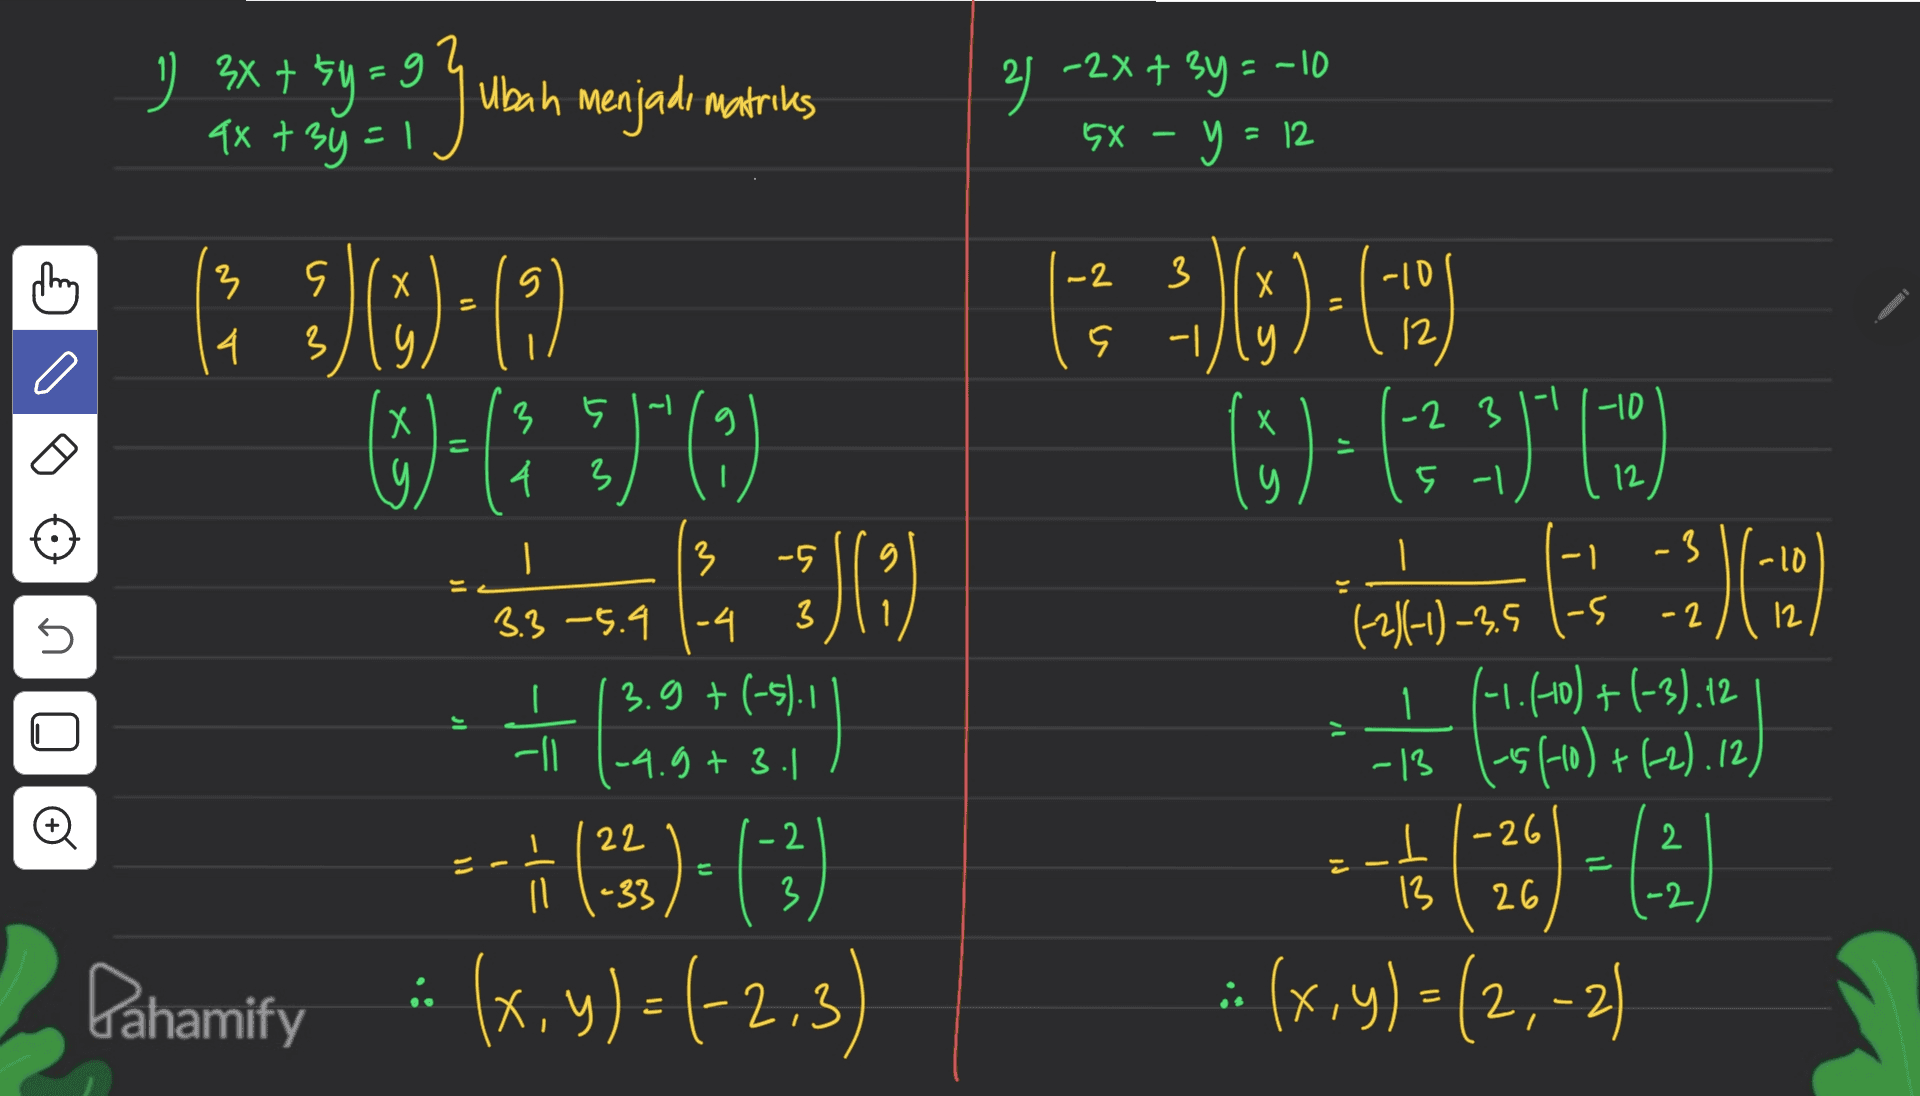 ) 3x + 5y = 9 4х + 0 = Ubah menjadi matries 21 -2x + 3y = -10 5x – y = 12 -2 3 3 S -| a { z- -10 o 5)=69 (1)-(3.3390 istabasskas :) 12 0 .10 ( ) (+)-(2) 6)+(73)"0) -SS-S4 1. 3)(3) (1) -- (25)= (3) Pahamify . (x,y)=(-2.3) U I -3 (-2)(-1) -3,5 ls 1 + (-1.1-10)+(-3).12 -13 1-5(-10)+(-2), 12) U El #(26) = (3) :(x,y)=(2,-2) is 